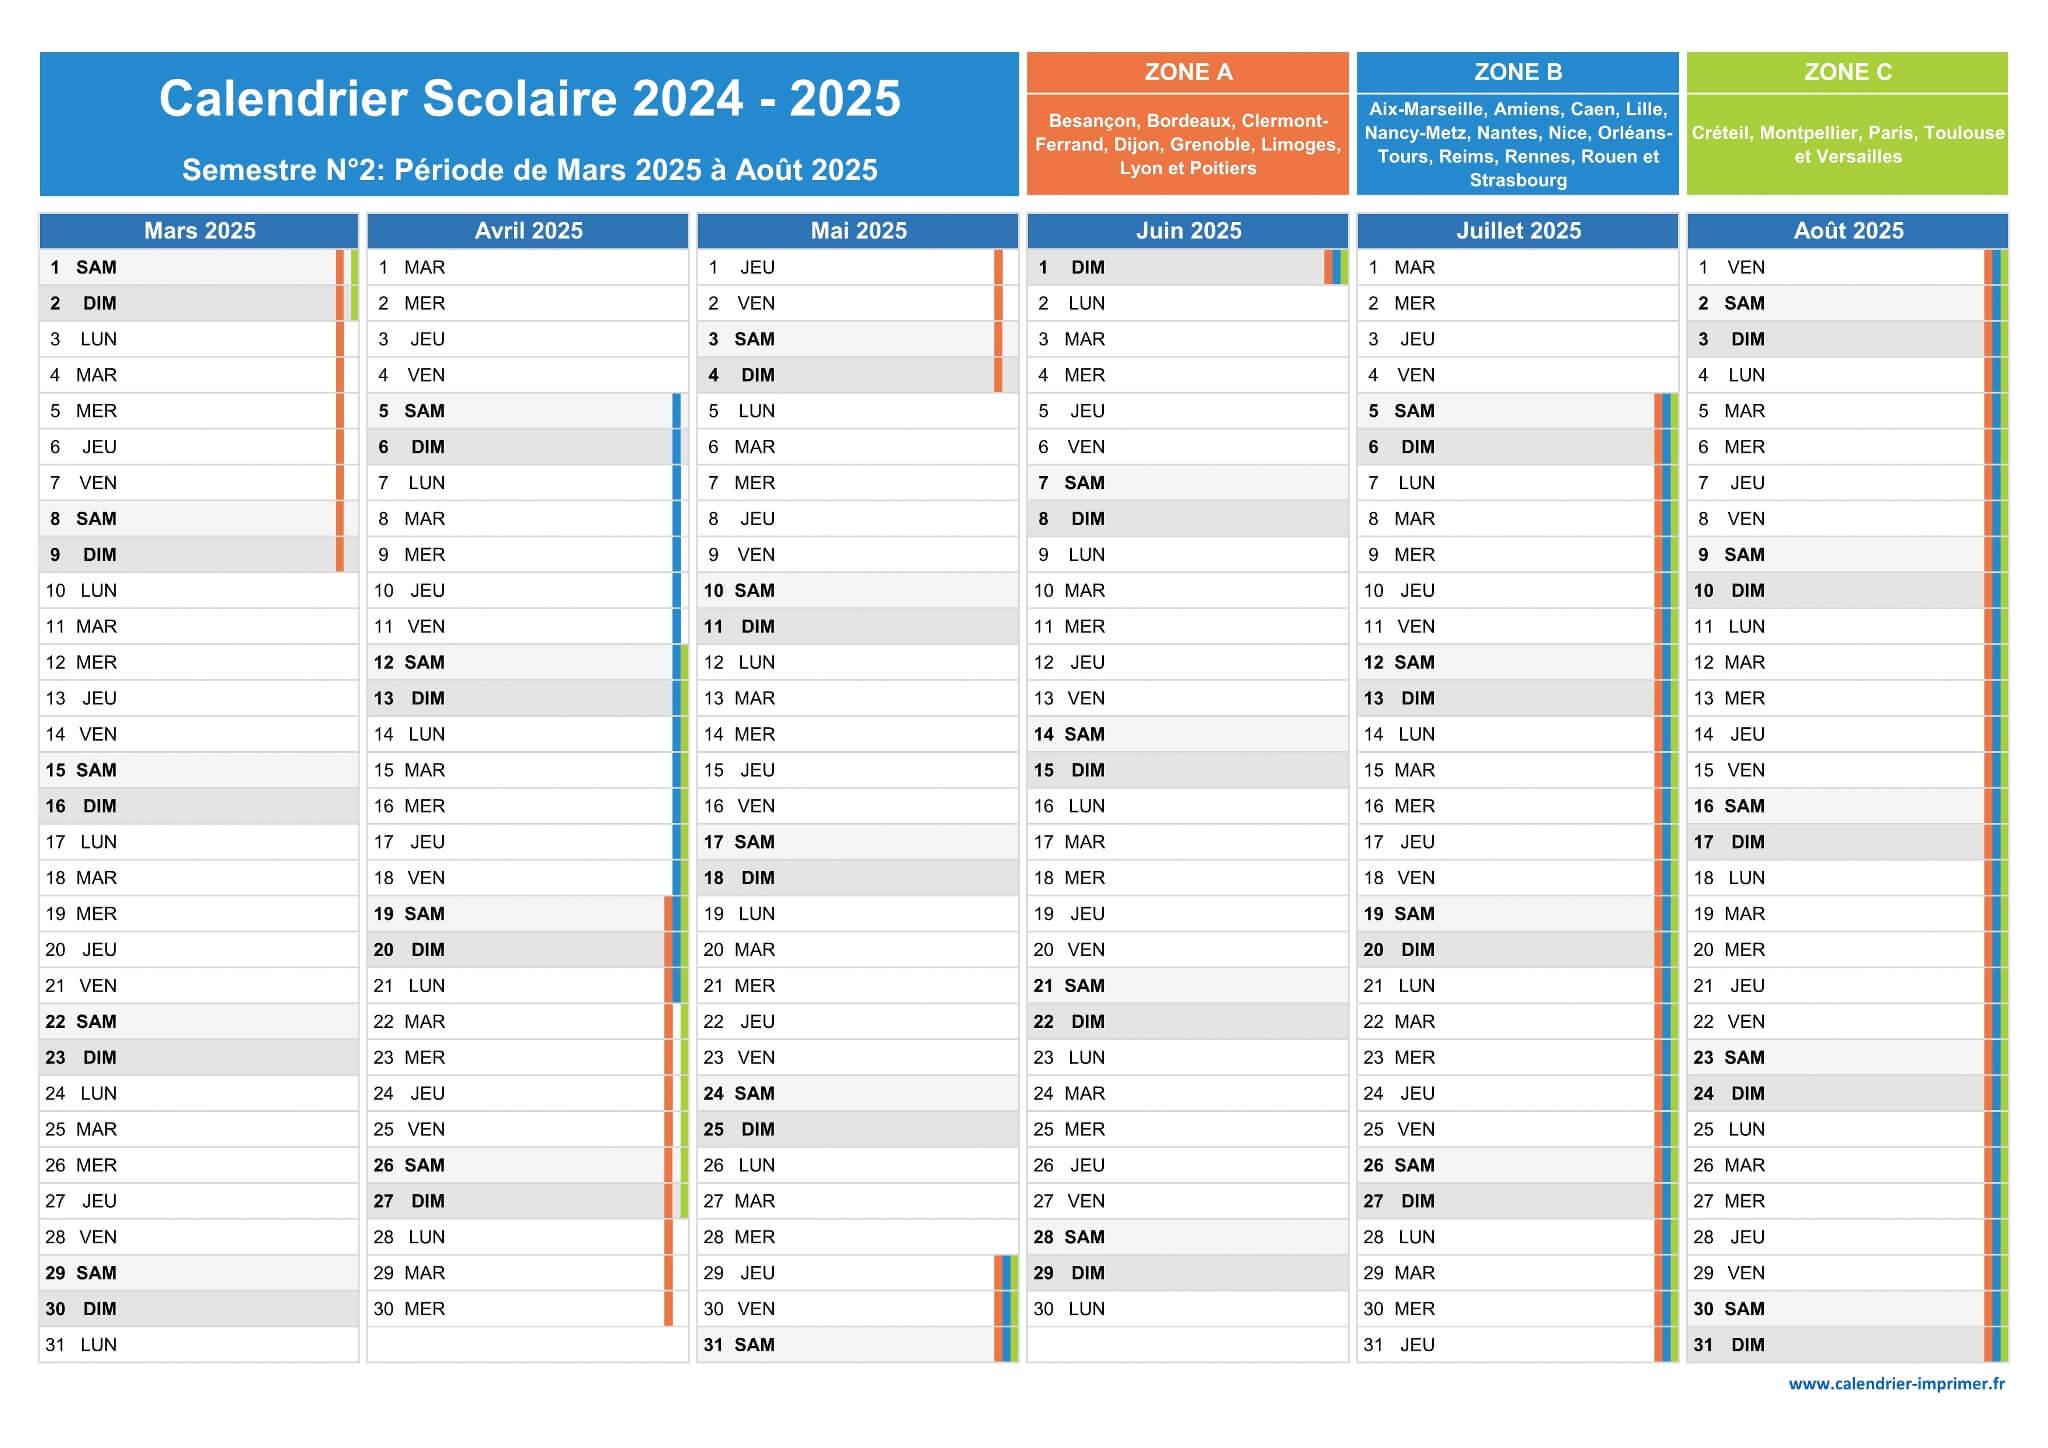 Vacances scolaires 2024 2025 ZONE A - Calendrier scolaire 2024-2025 de la  zone A à imprimer